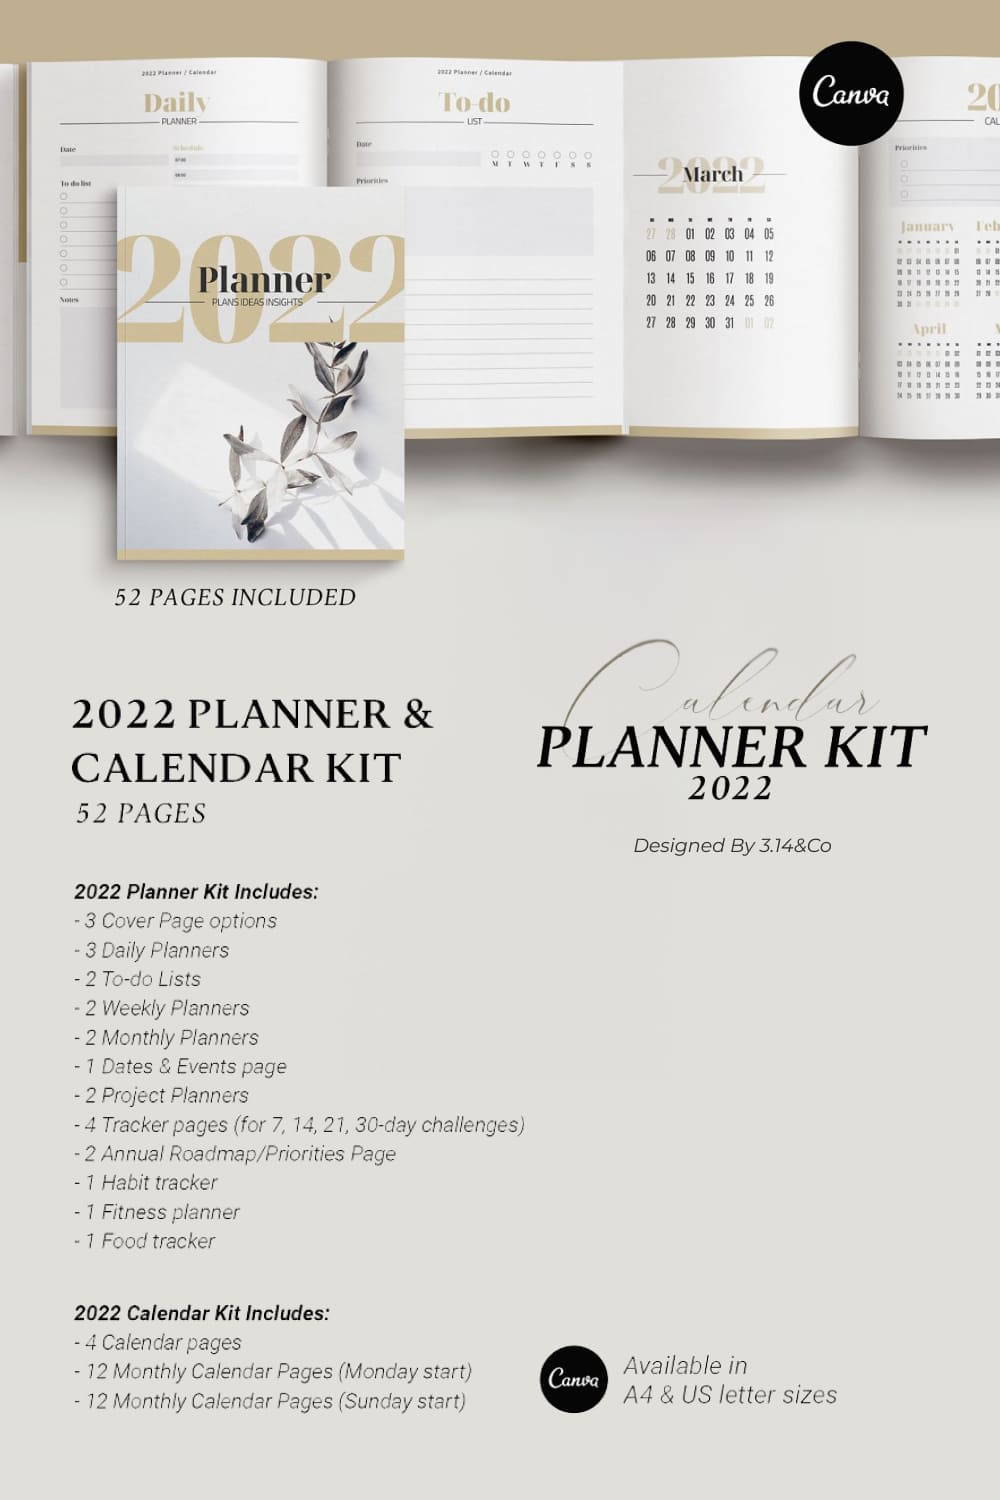 canva planner 2022 calendar kit pinterest image.